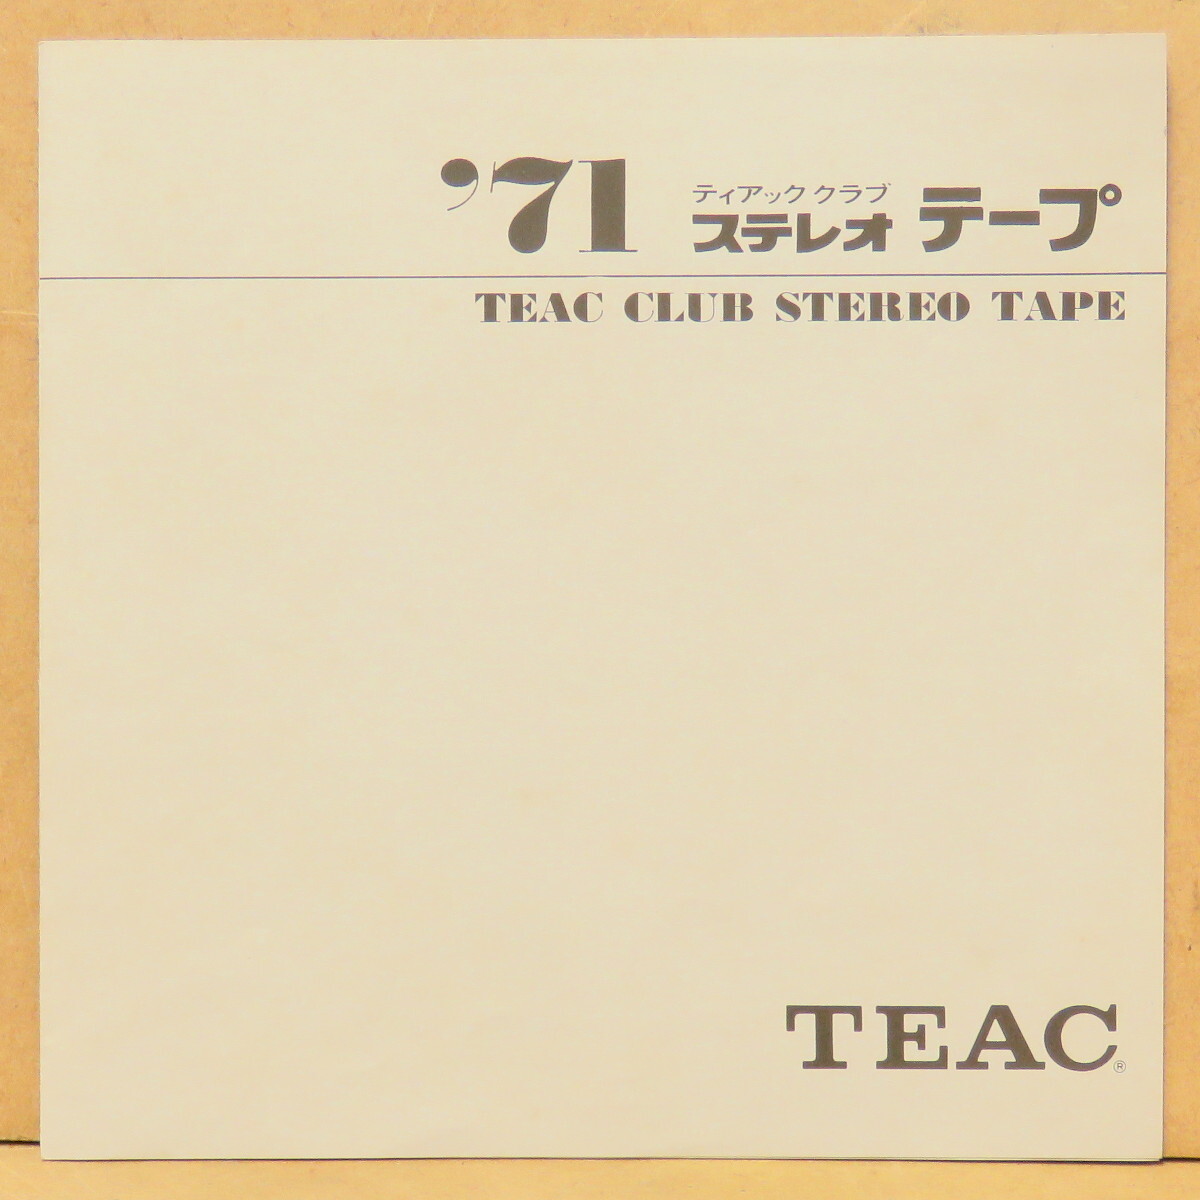 オープンリールミュージックテープ TEAC CLUB '71 ティアッククラブ会員専用デッキチェックテープの画像4